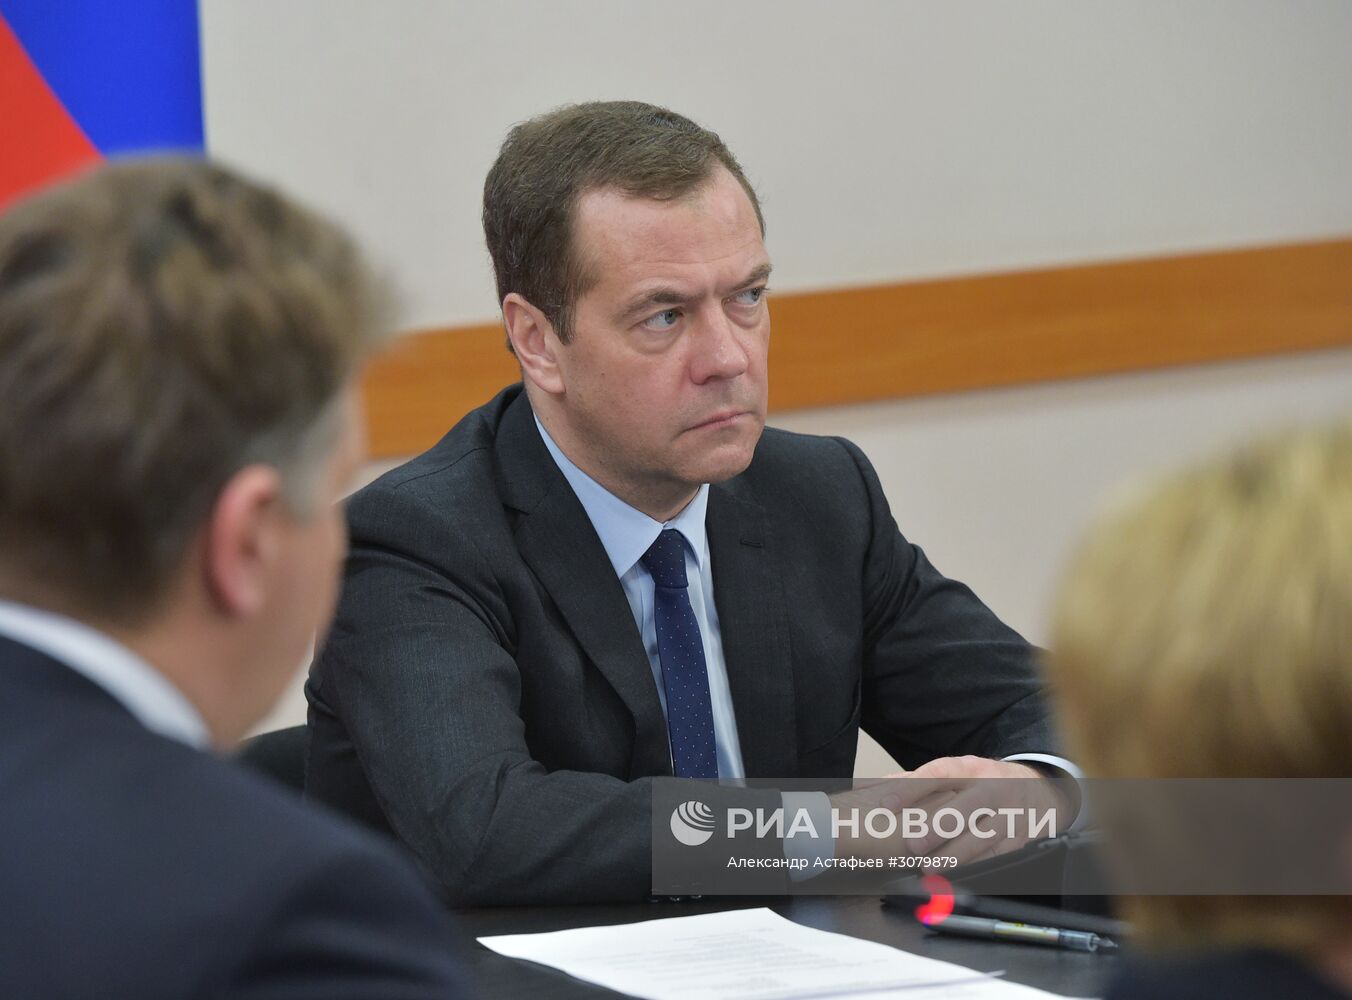 Рабочая поездка премьер-министра РФ Д. Медведева в Мурманск